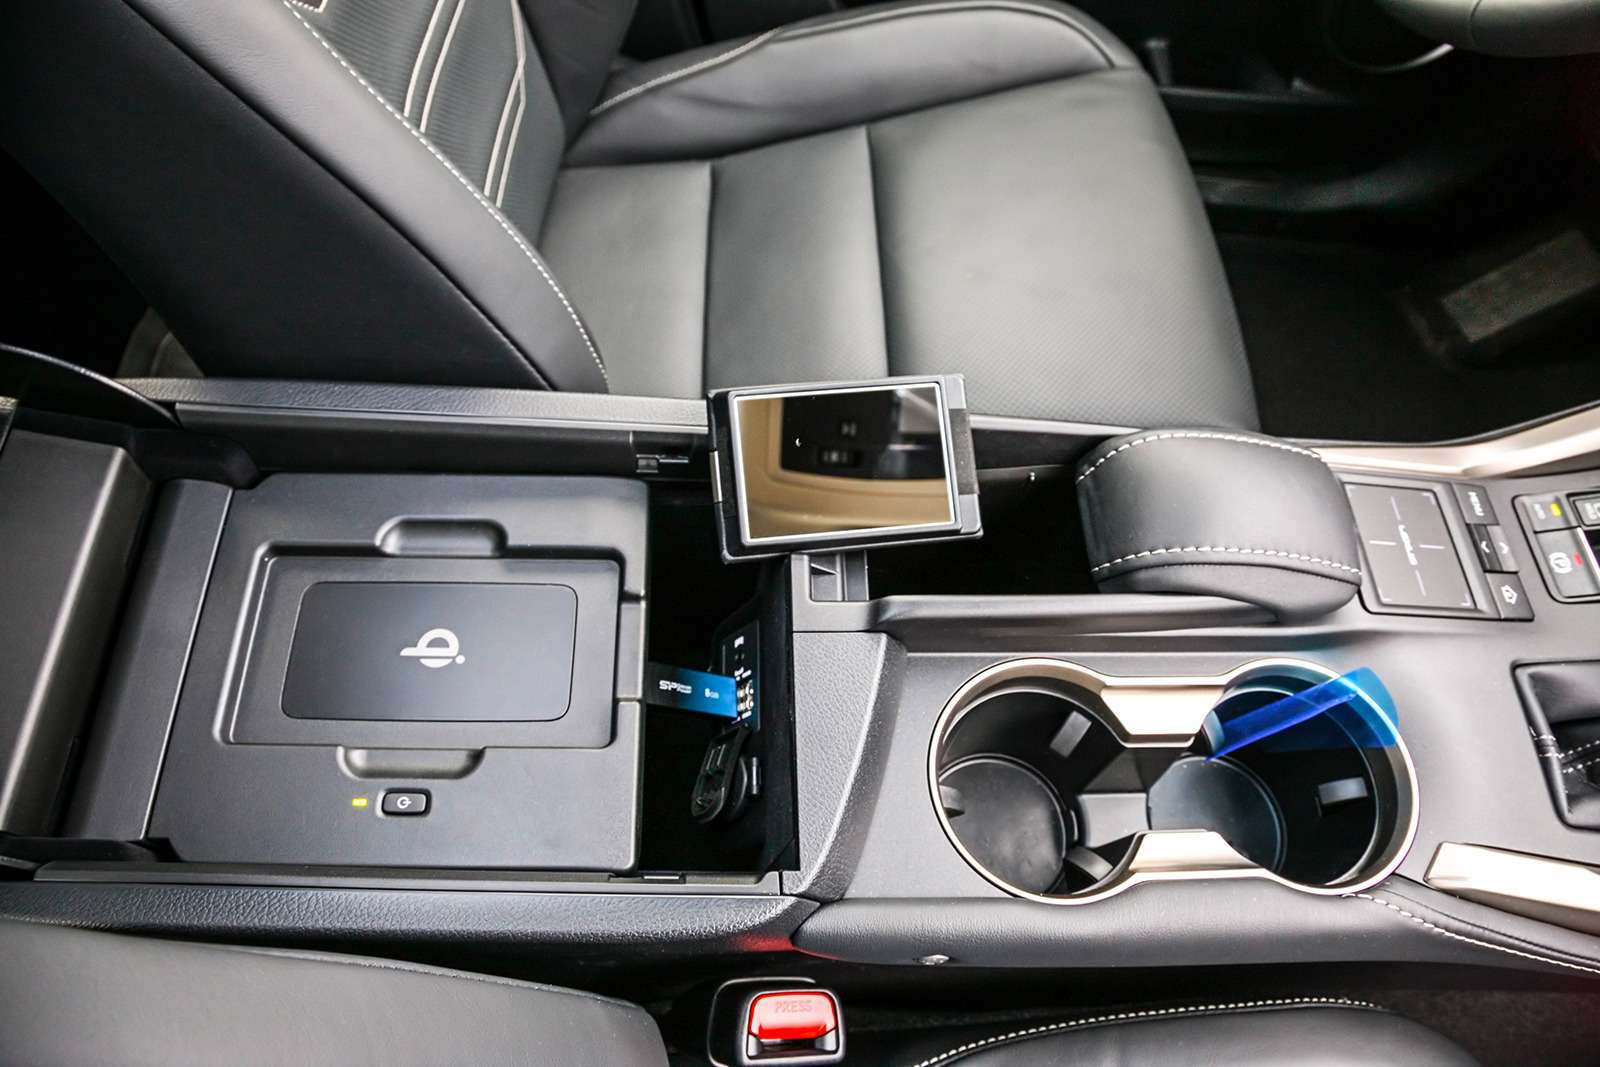 А вот и то самое «лишнее» зеркальце! Под крышкой центрального бокса Lexus NX 300h помимо мультимедийных слотов есть местечко для беспроводной зарядки смартфона